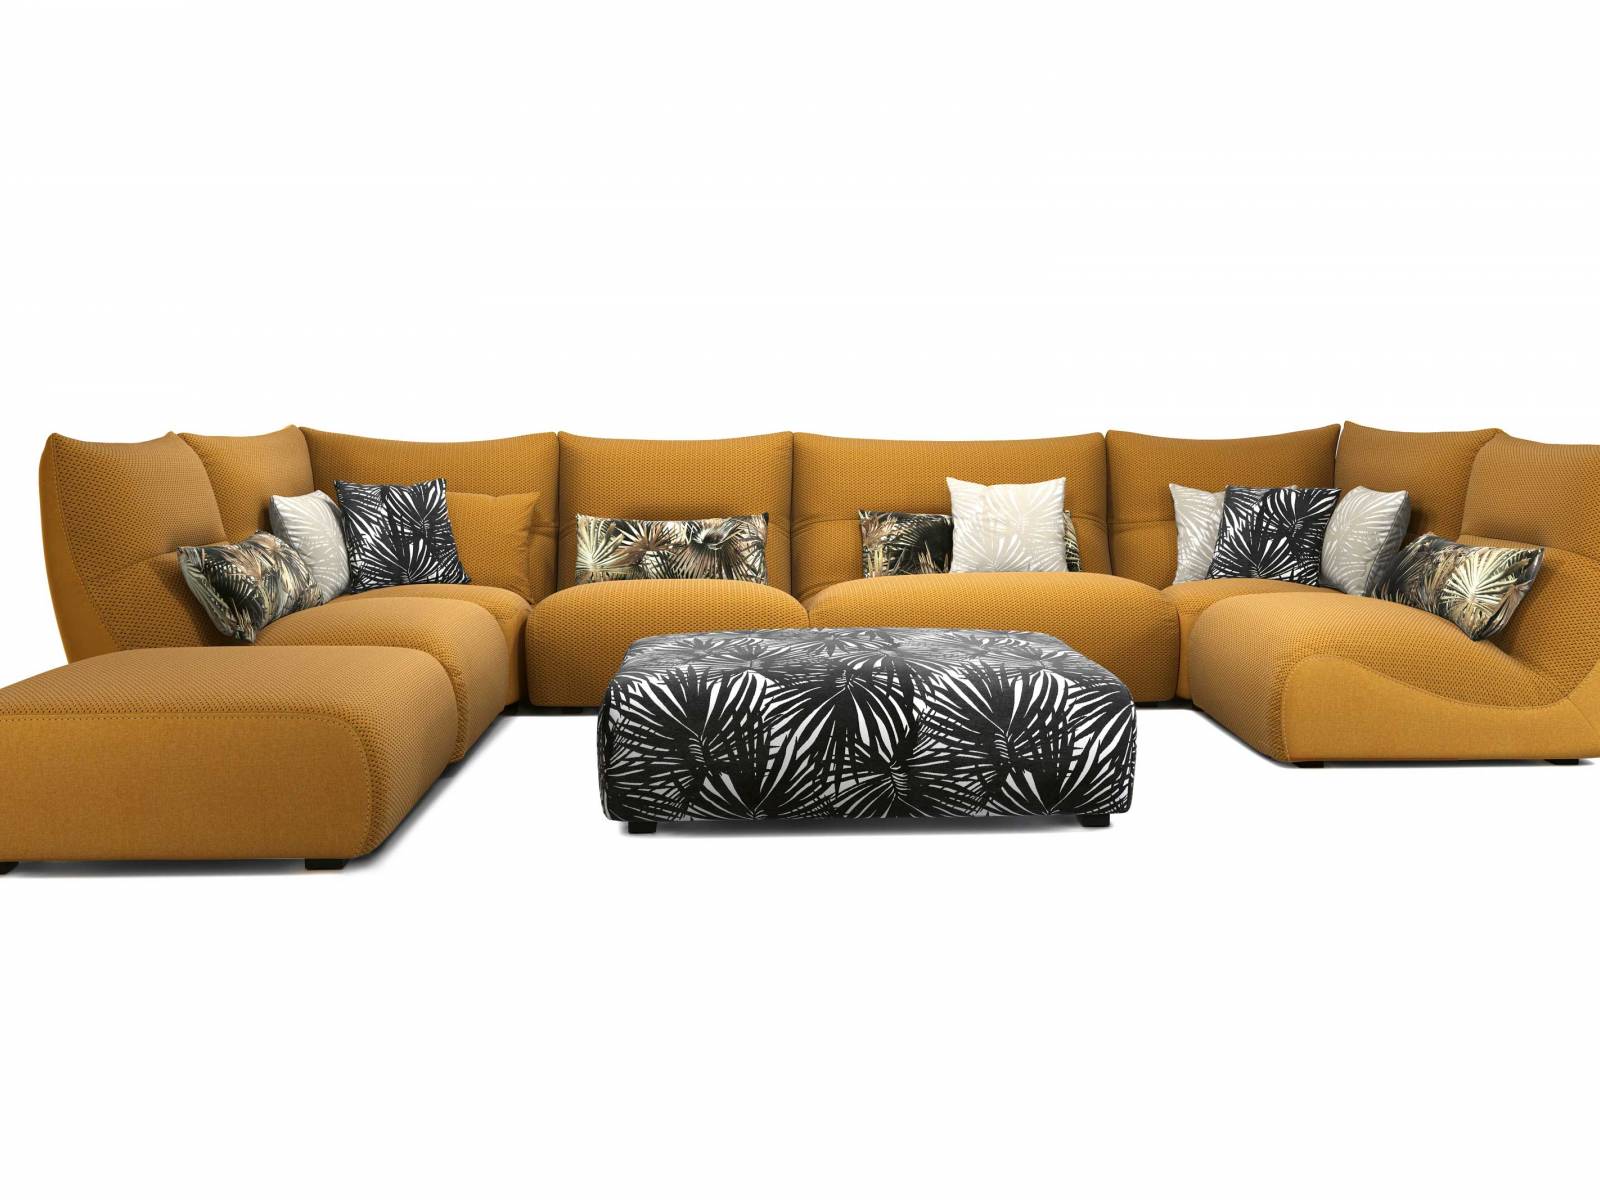 In Anlehnung an das ursprünglich für den Innenbereich konzipierte Modell gibt es das Sofa «Temps Calme» jetzt für den Outdoor-Bereich. Modular aufgebaut, lässt es sich der eigenen Terrasse perfekt anpassen. In Uni und frech gemusterten Bezügen. ROCHE BOBOIS.